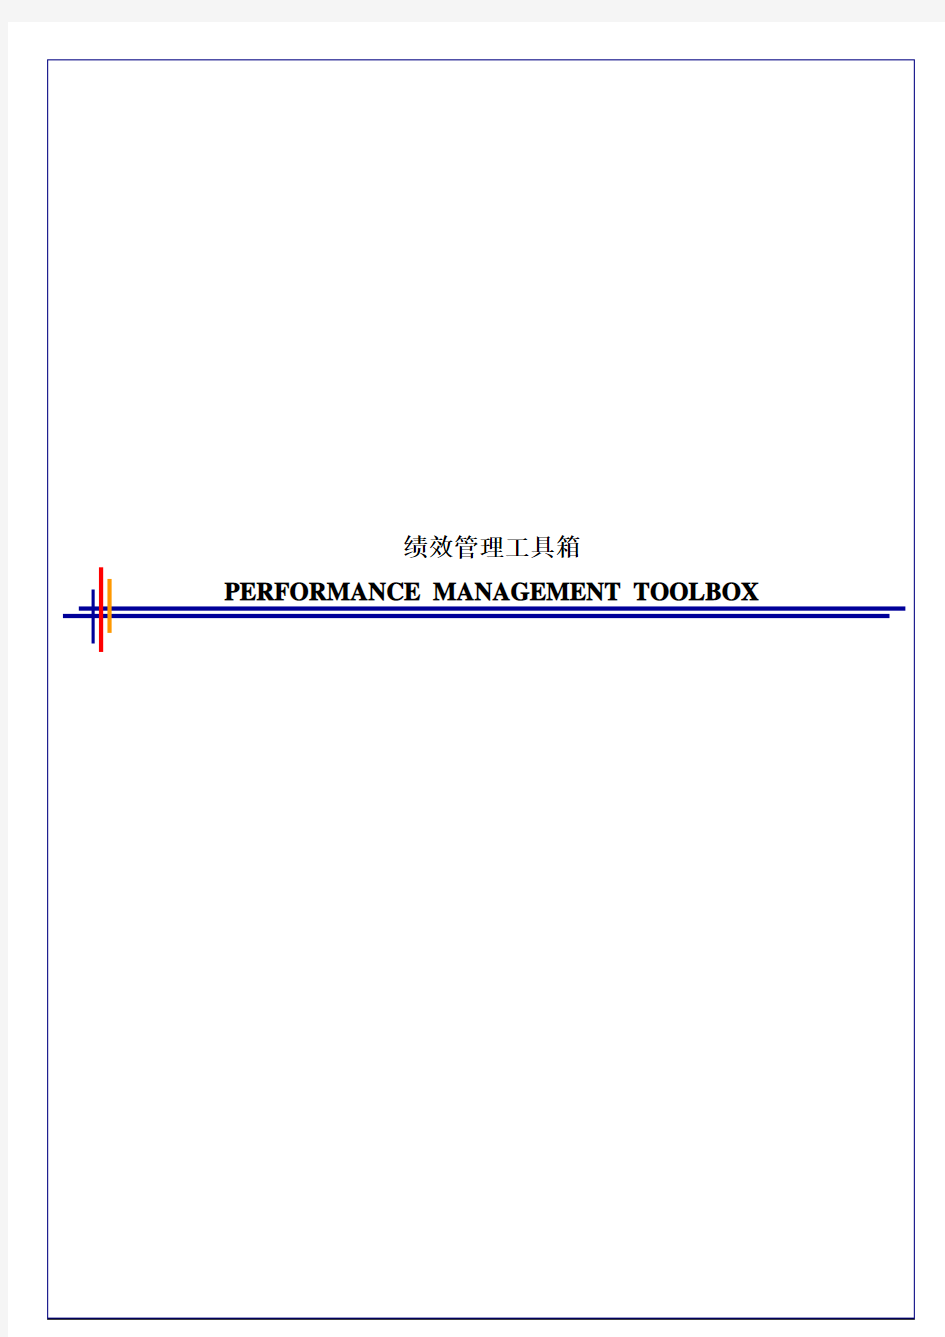 毕博-管理咨询工具方法—Performance Management Toolbox-chinese